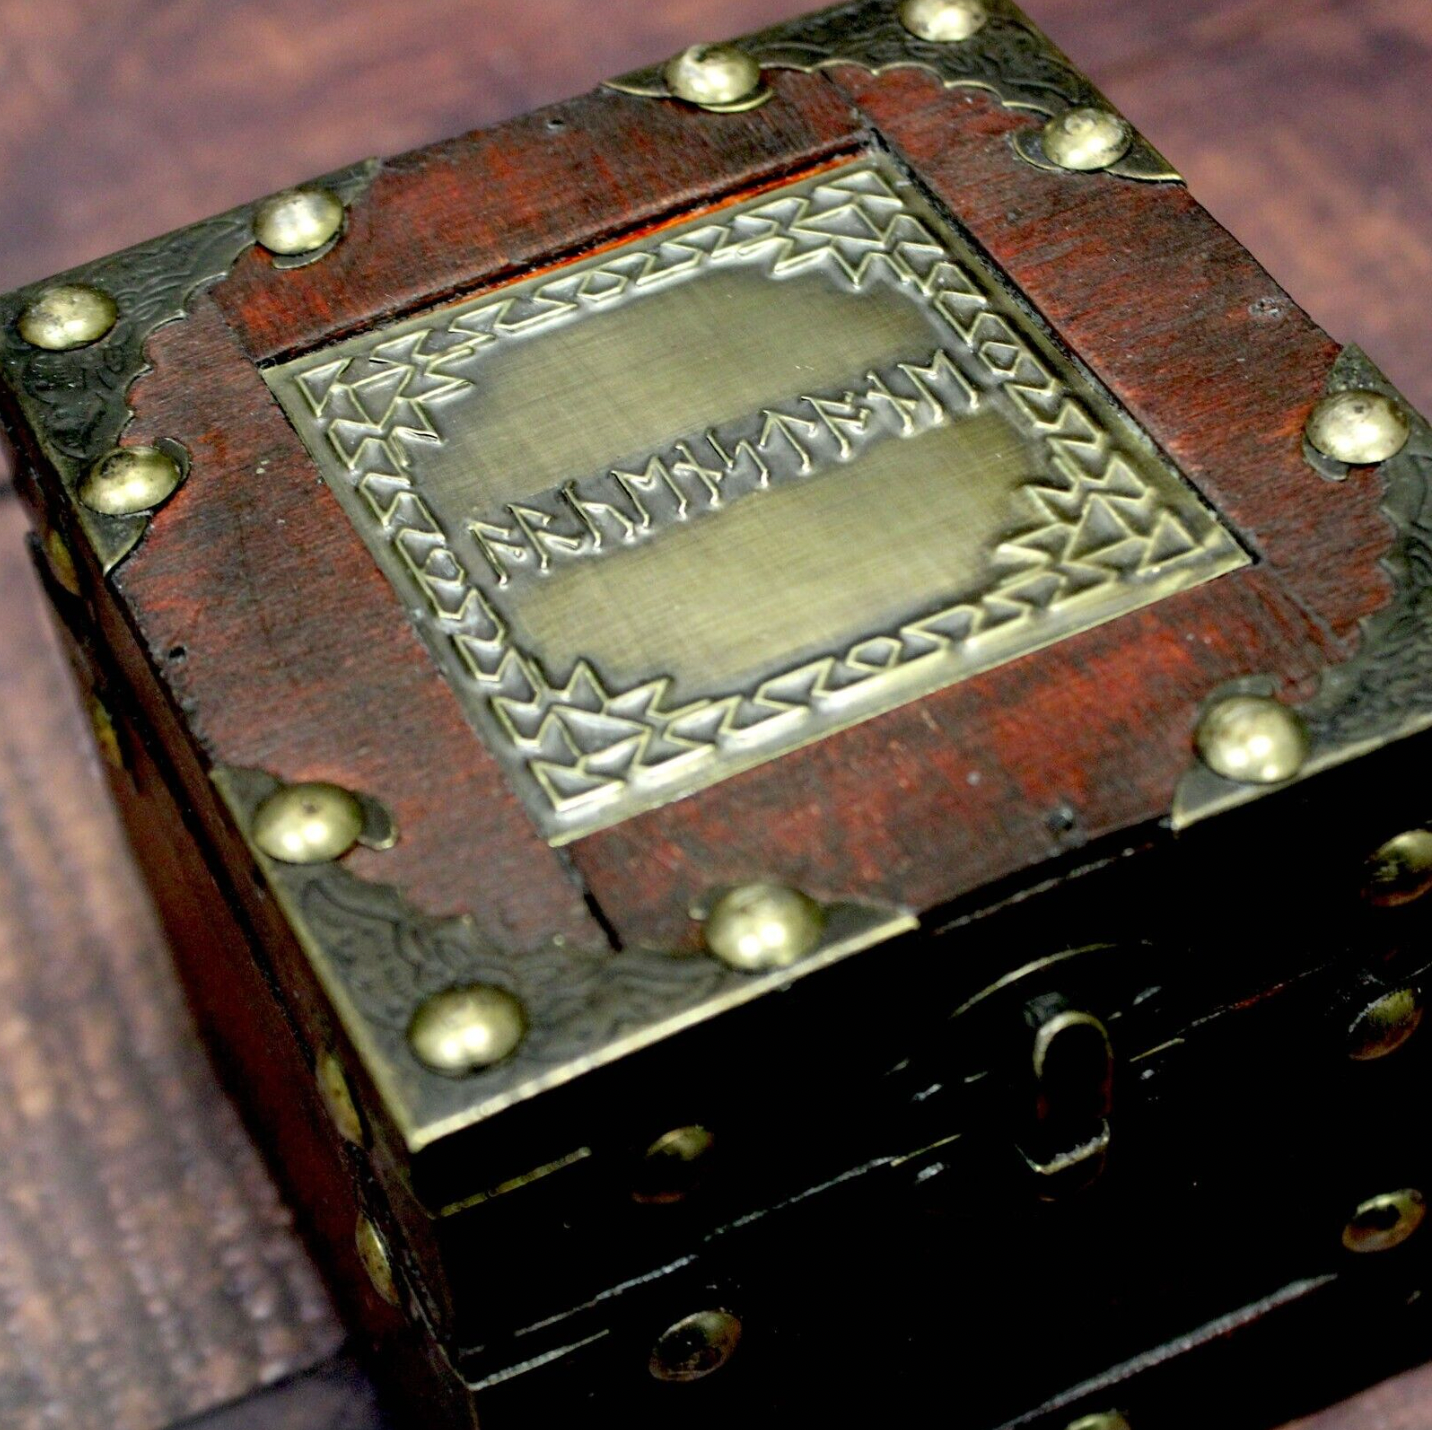 The Arkenstone In Dwarven Treasure Box